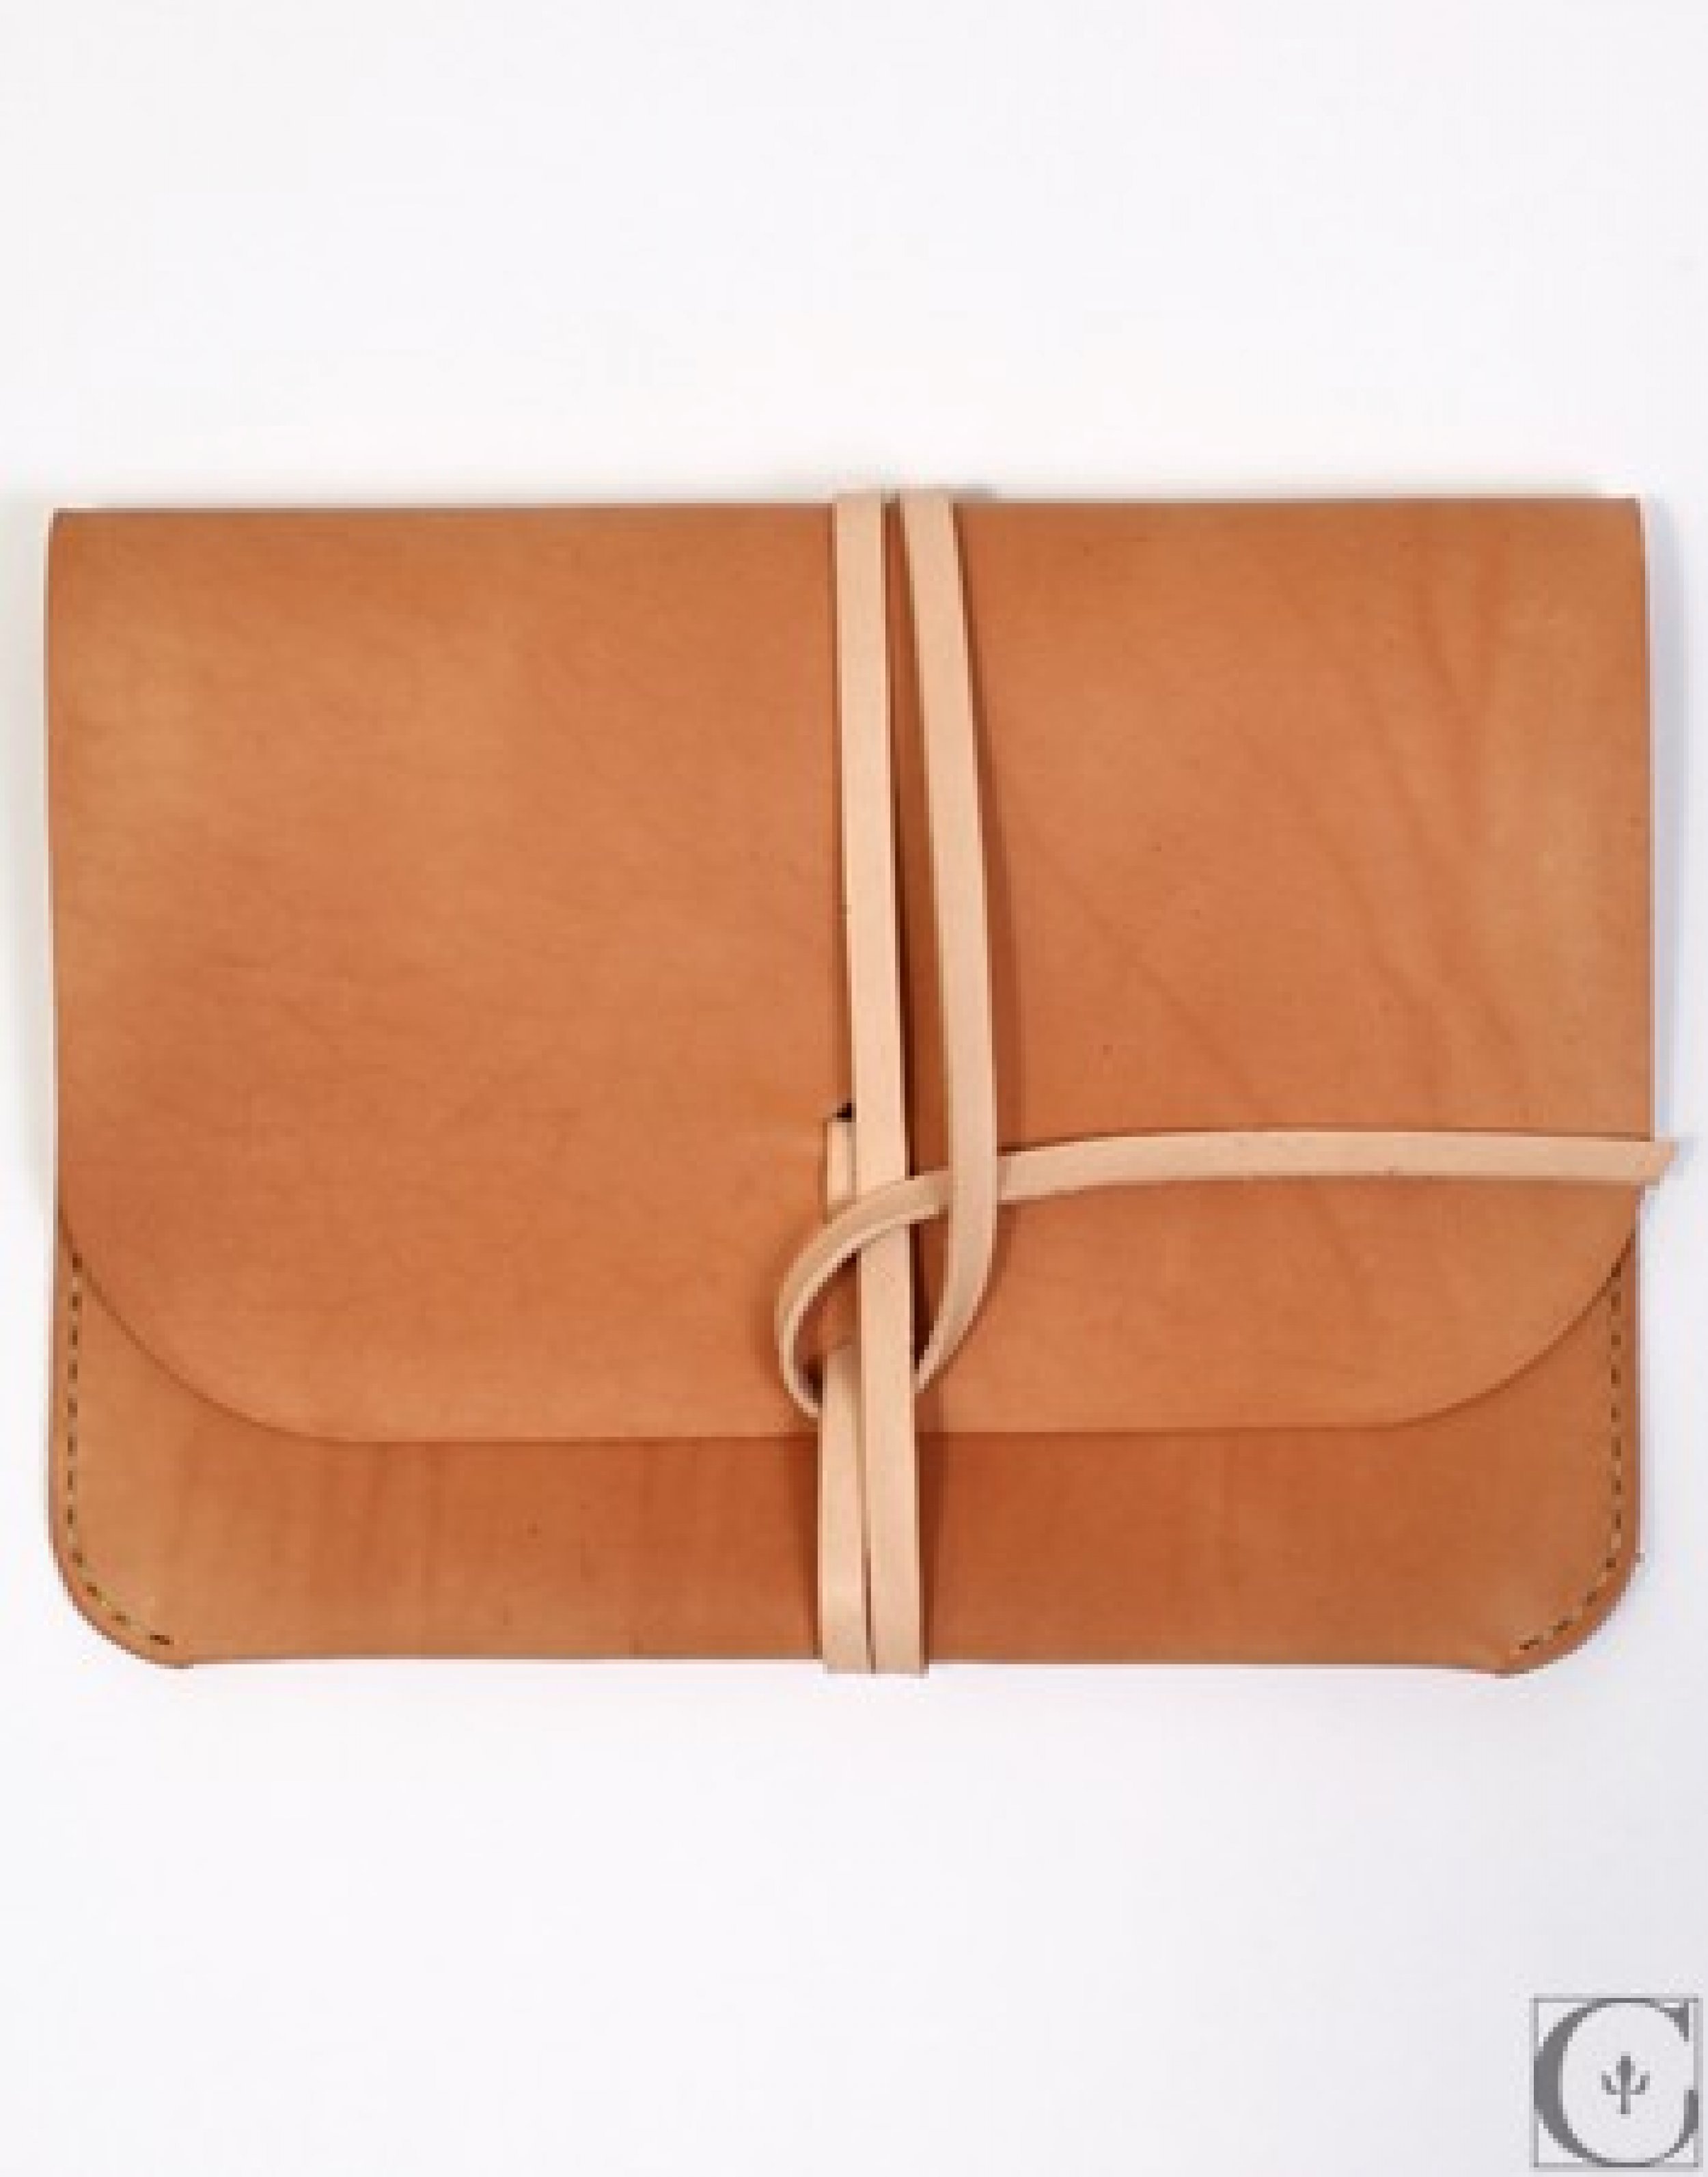 Kenton Sorenso Leather iPad Portfolio